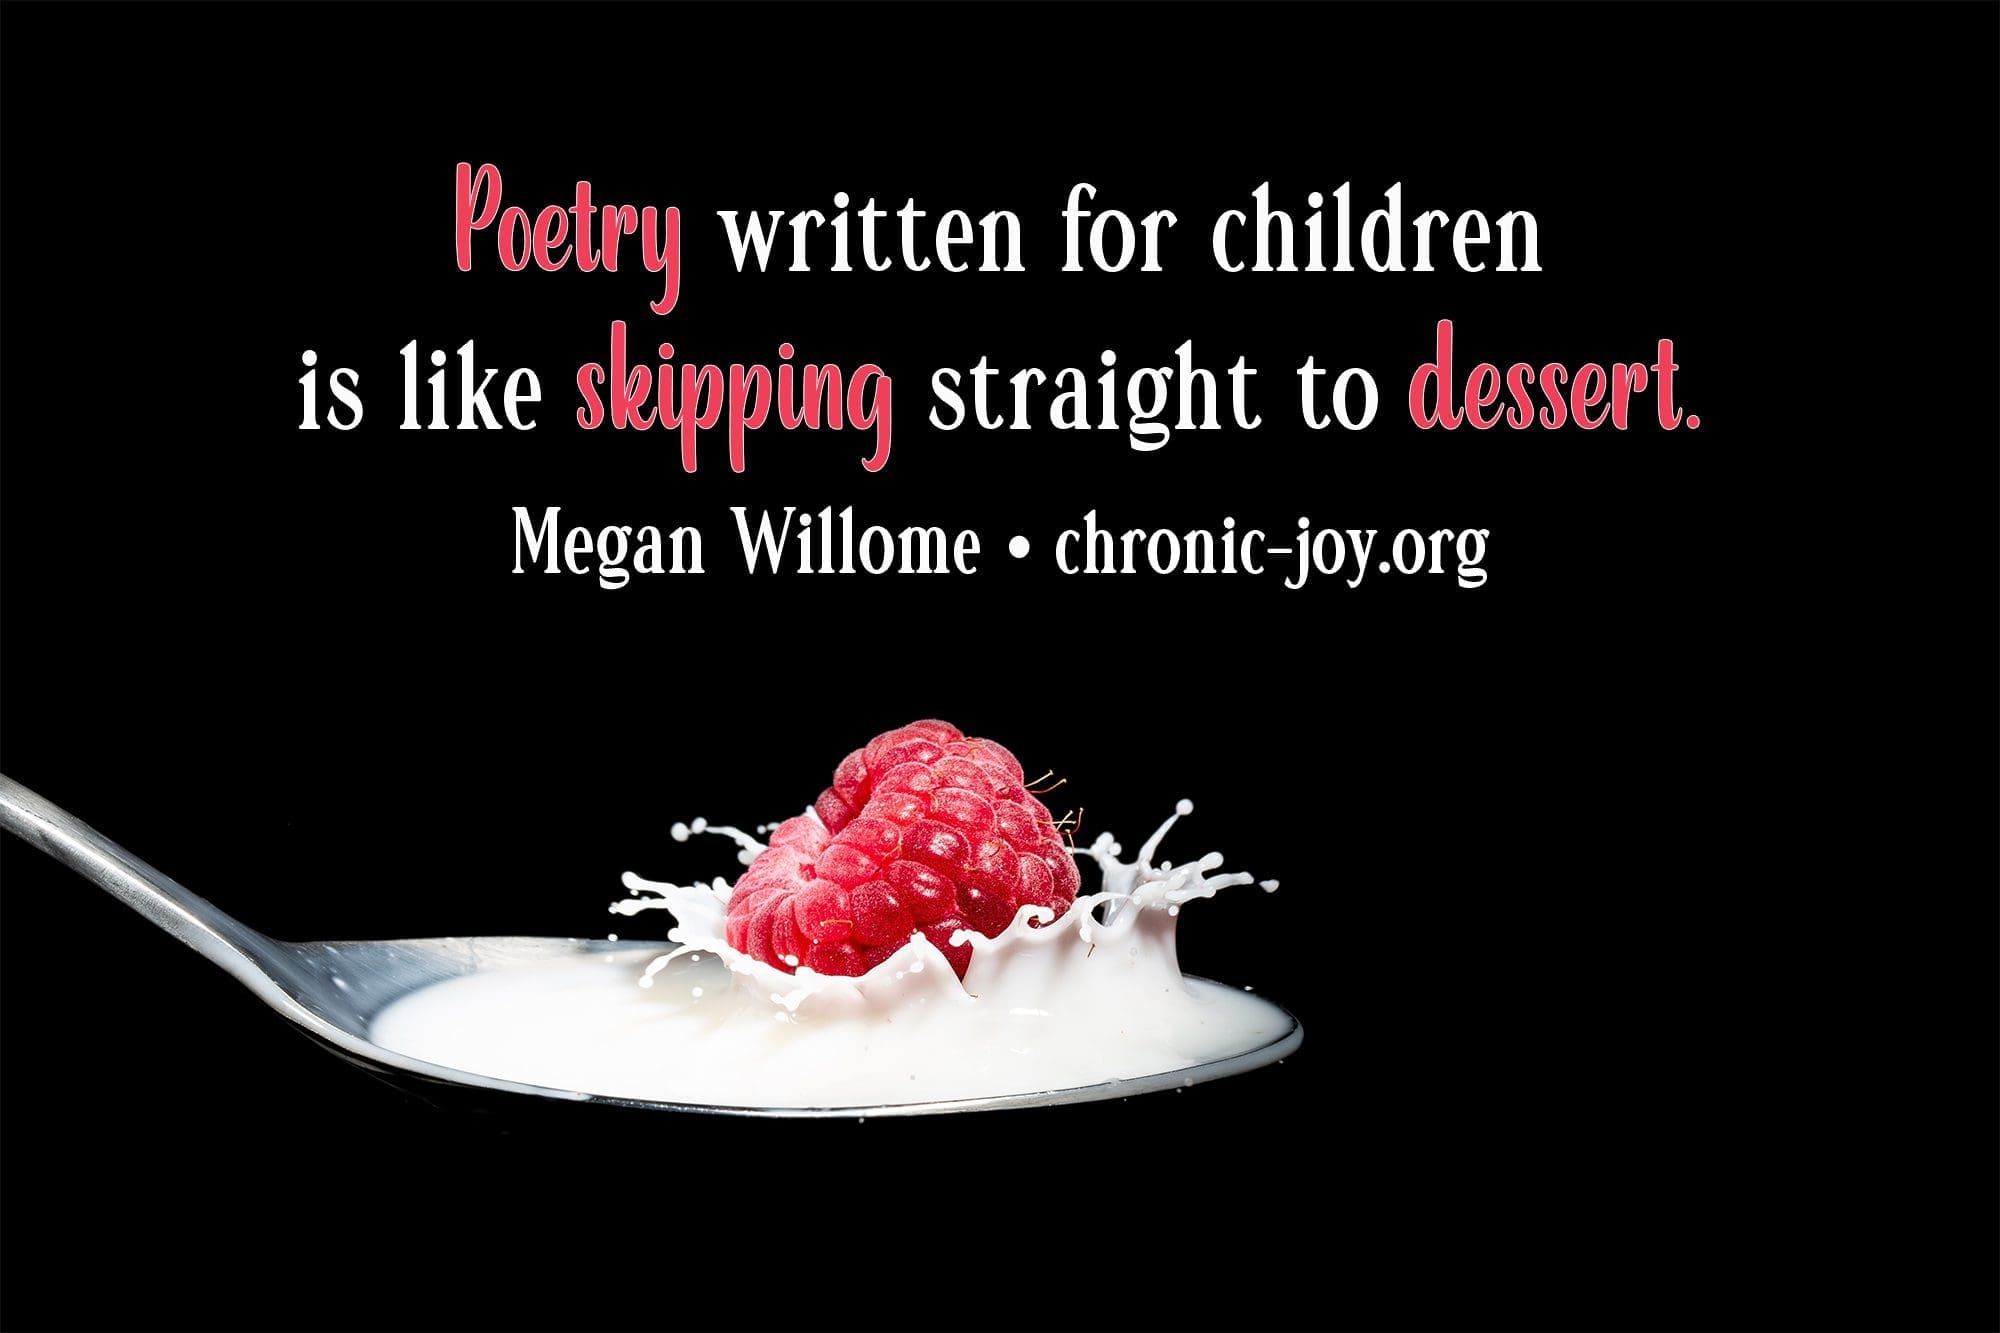 "Poetry written for children is like skipping straight to dessert." Megan Willome